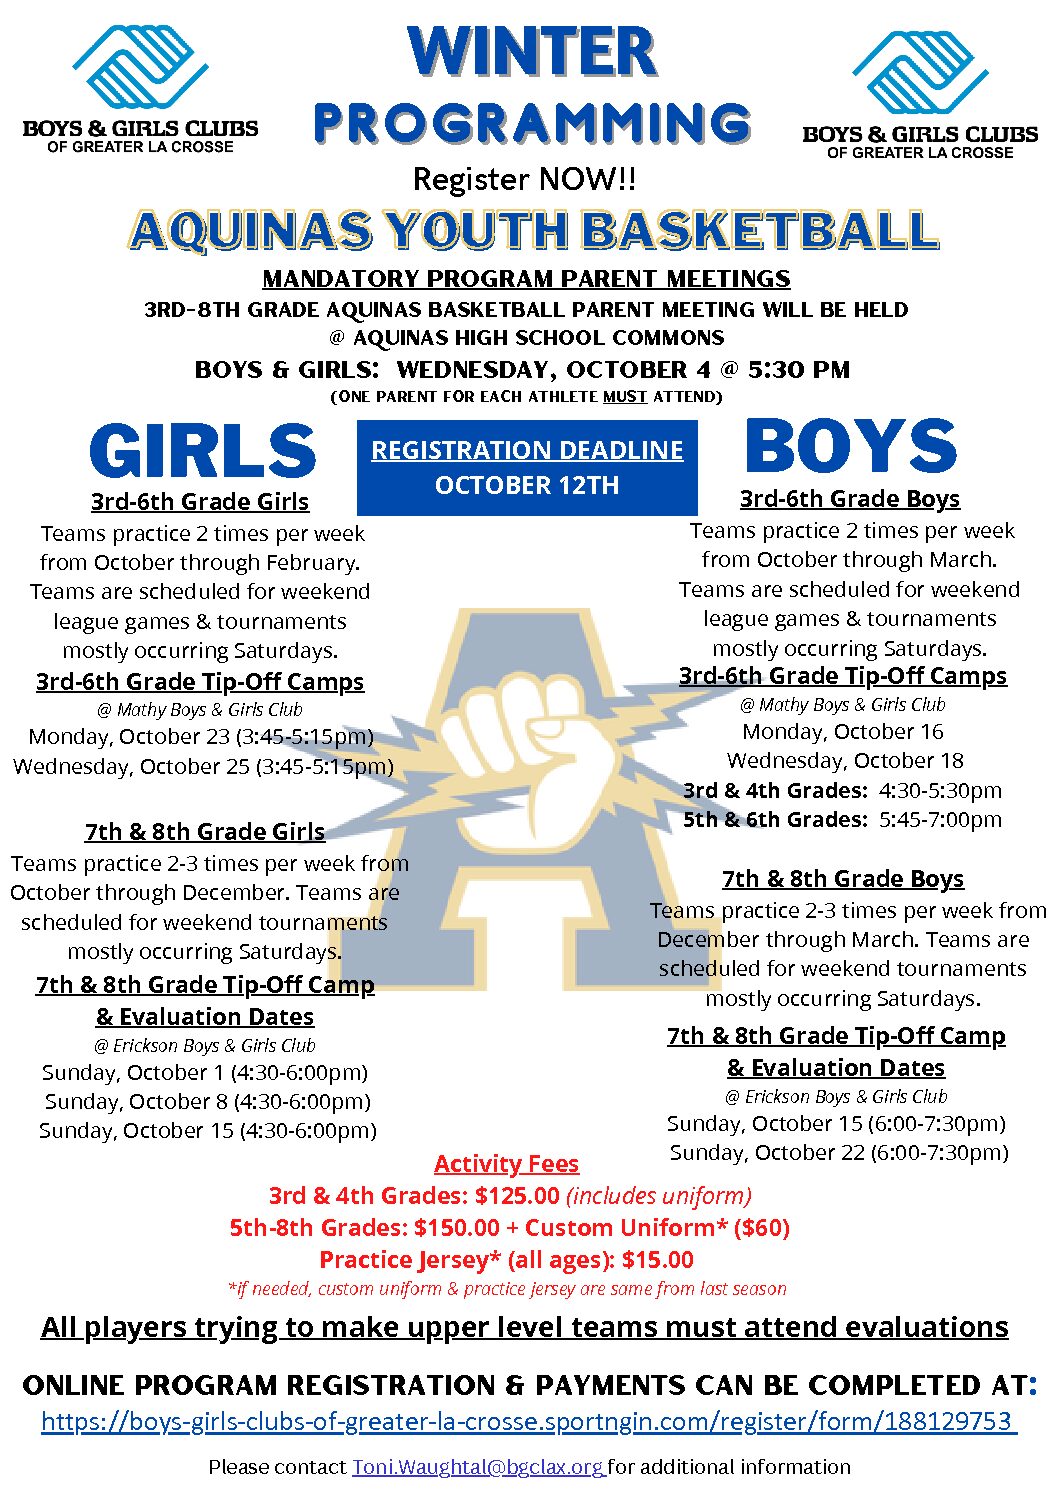 Winter Programming – 3rd-8th Grade Aquinas Youth Basketball